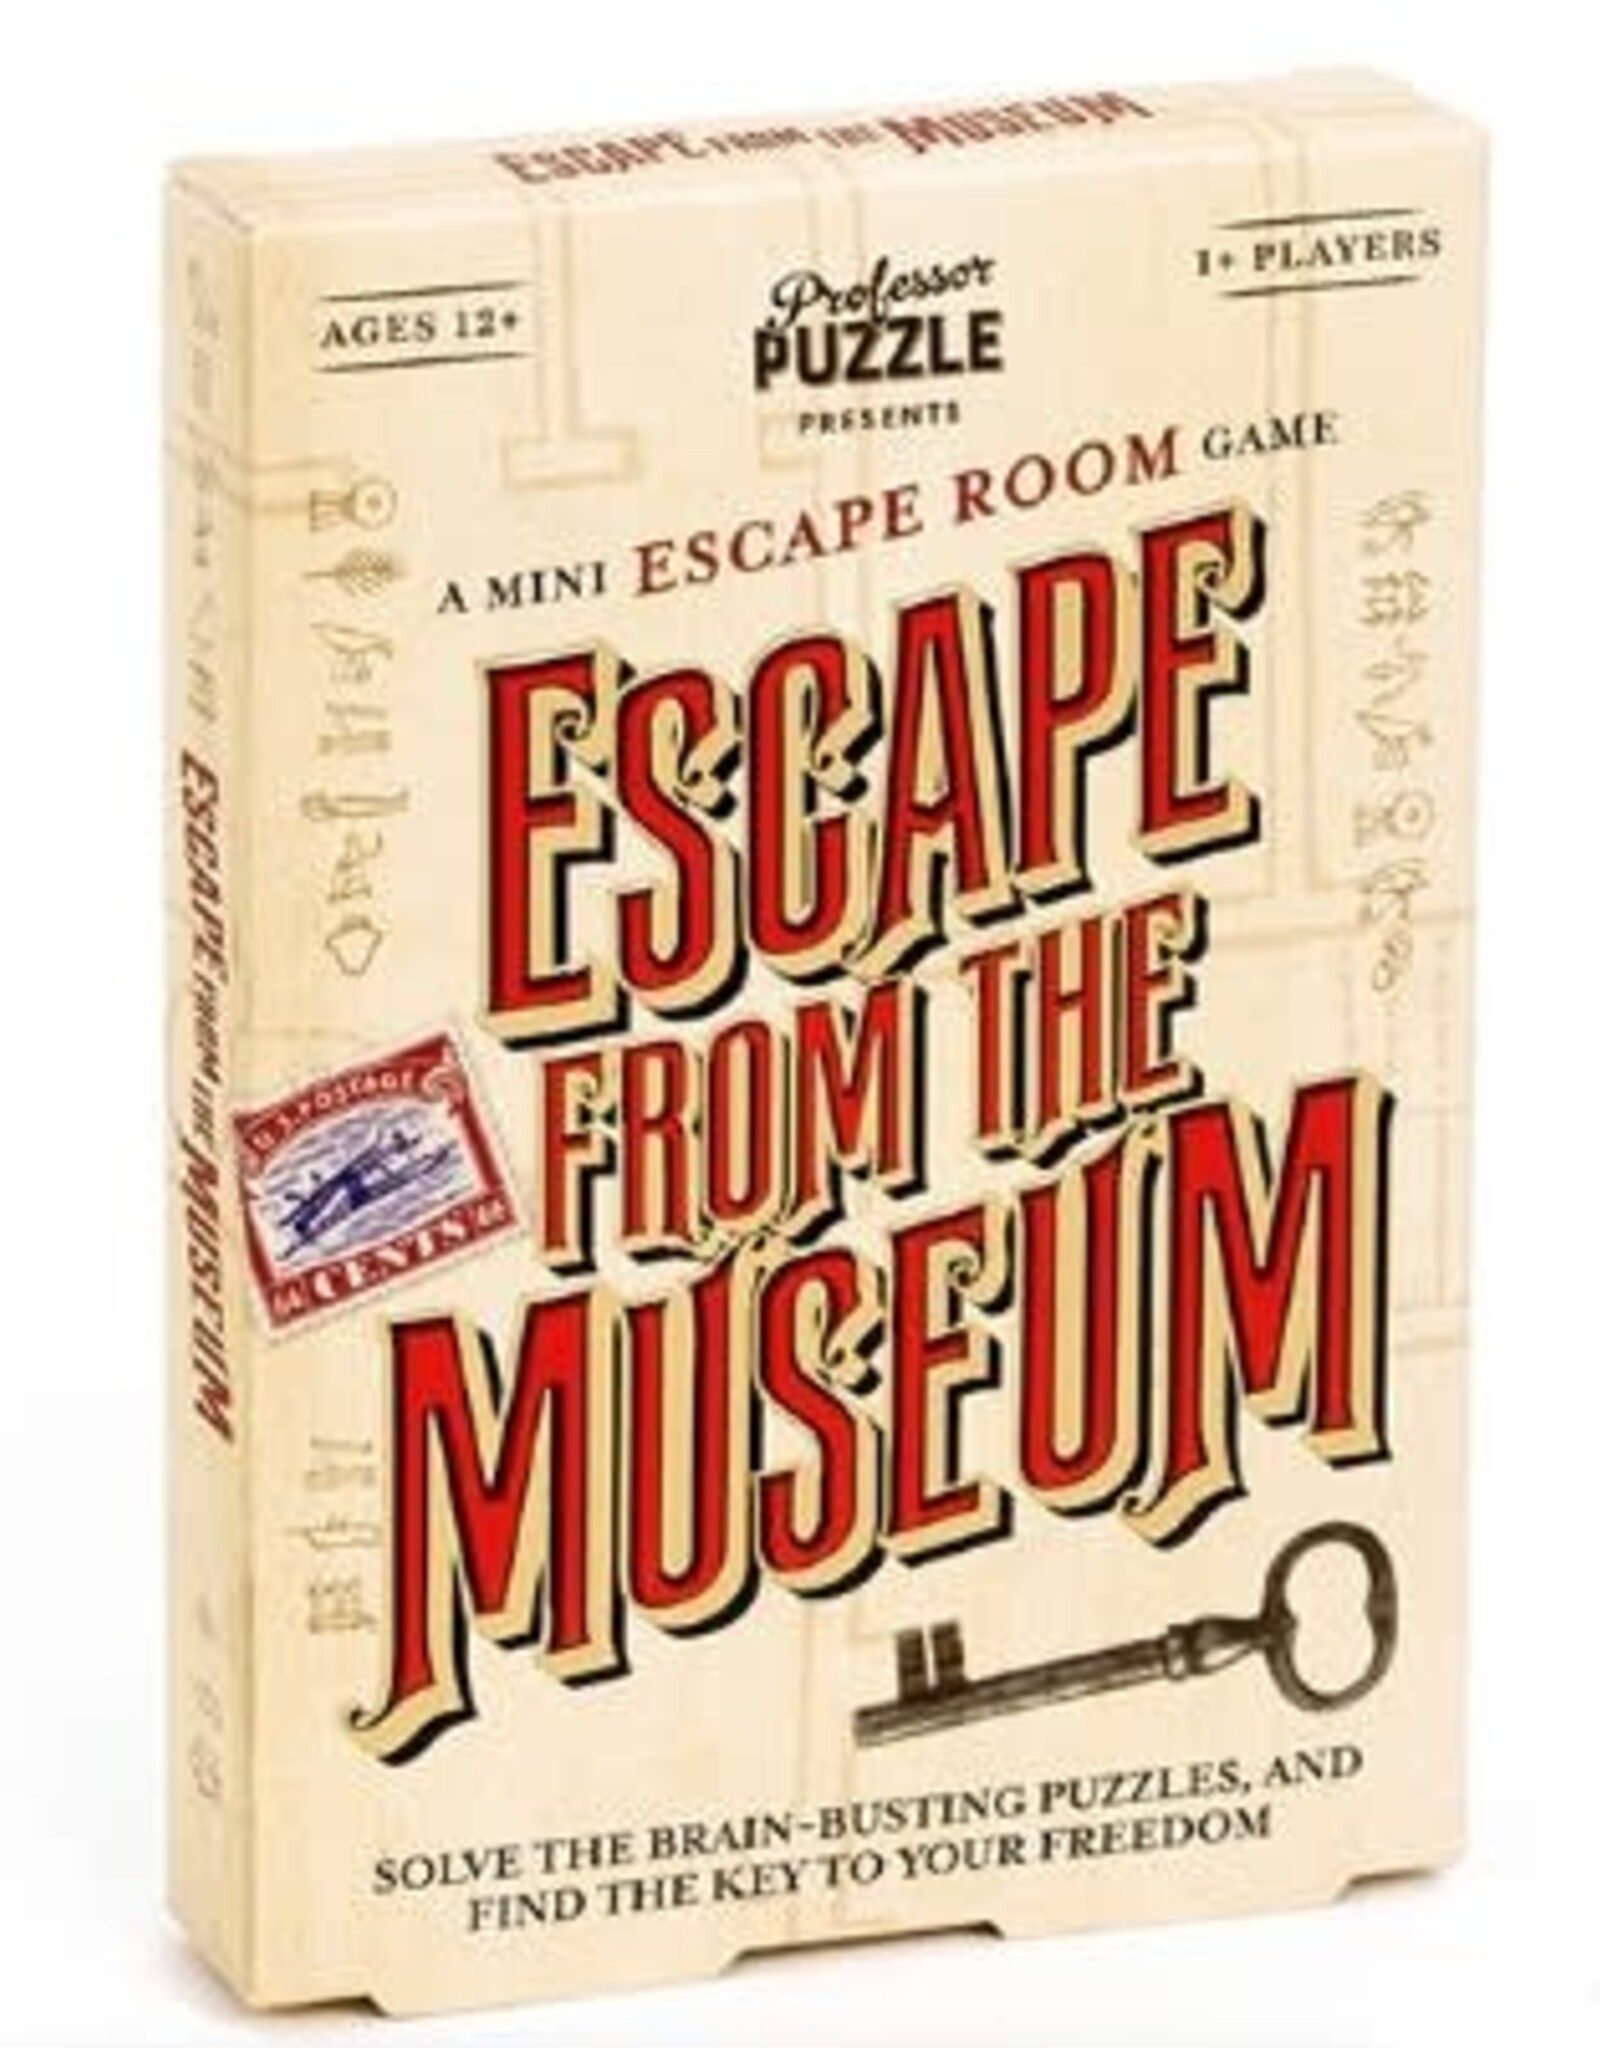 Professor Puzzle MINI ESCAPE FROM THE MUSEUM GAME